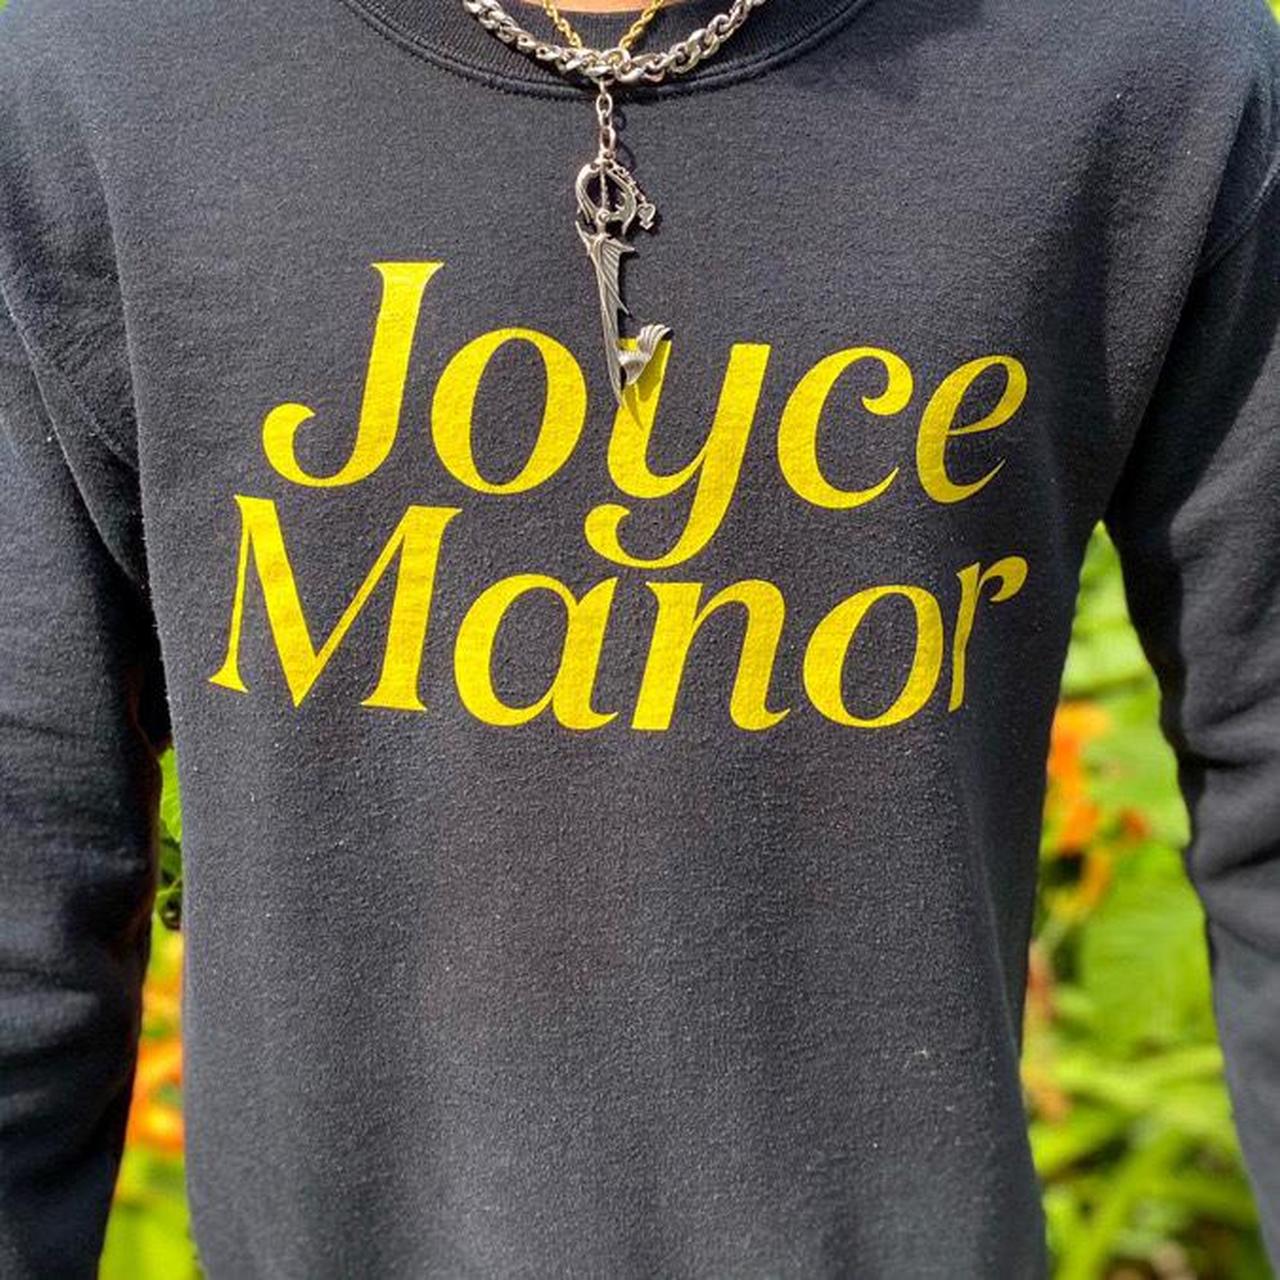 Product Image 3 - 🍻 Joyce Manor Tour Crewneck🍻

💟RARE